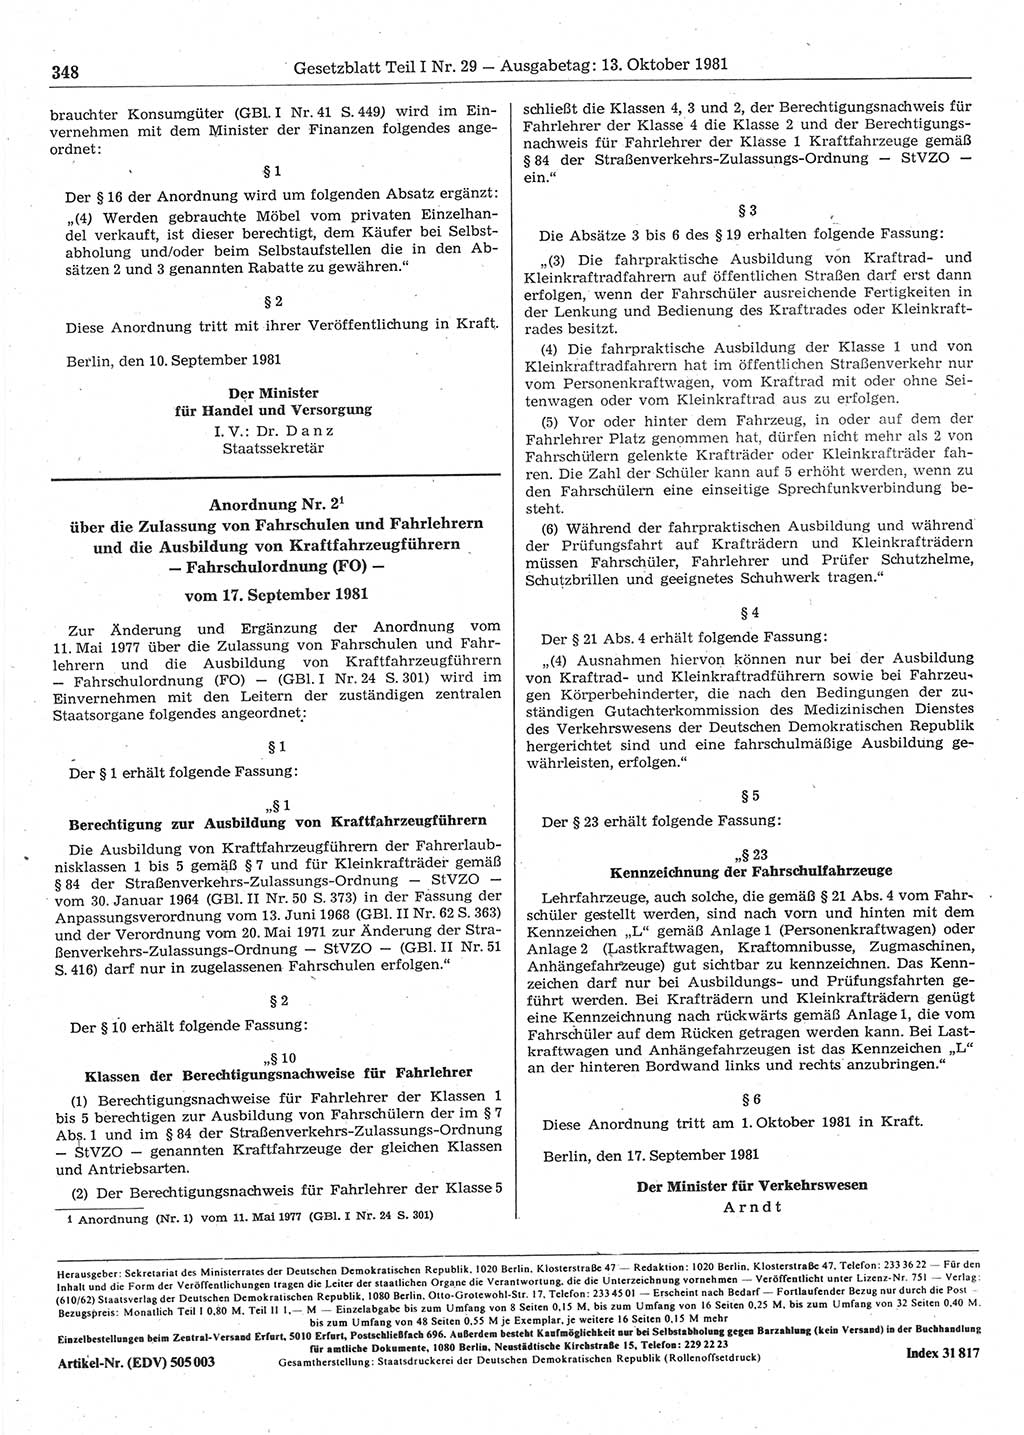 Gesetzblatt (GBl.) der Deutschen Demokratischen Republik (DDR) Teil Ⅰ 1981, Seite 348 (GBl. DDR Ⅰ 1981, S. 348)